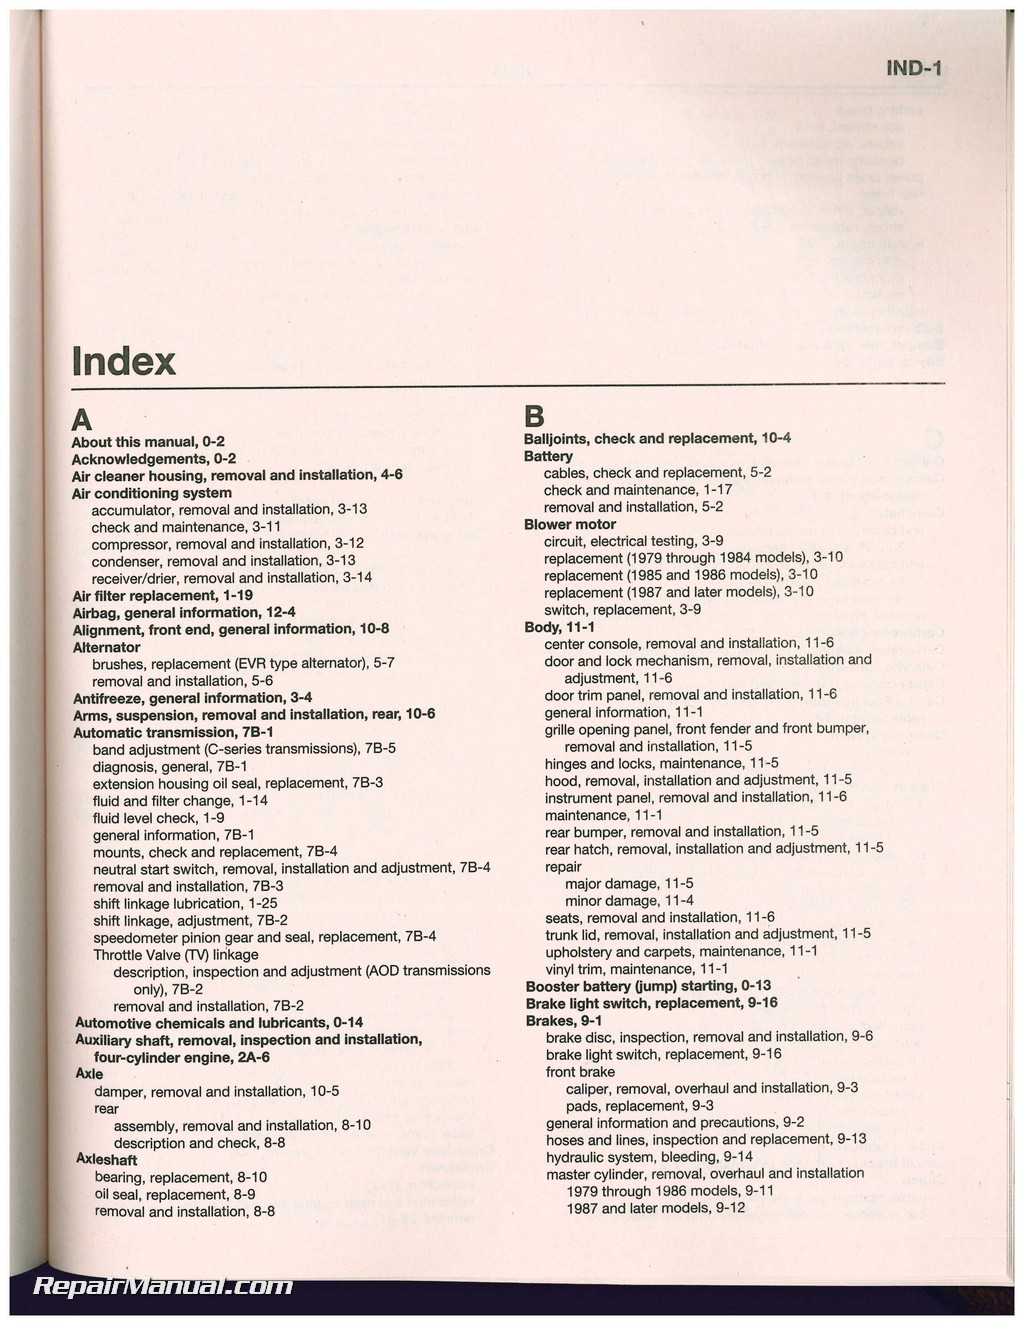 1987 Ford mustang repair manual #5